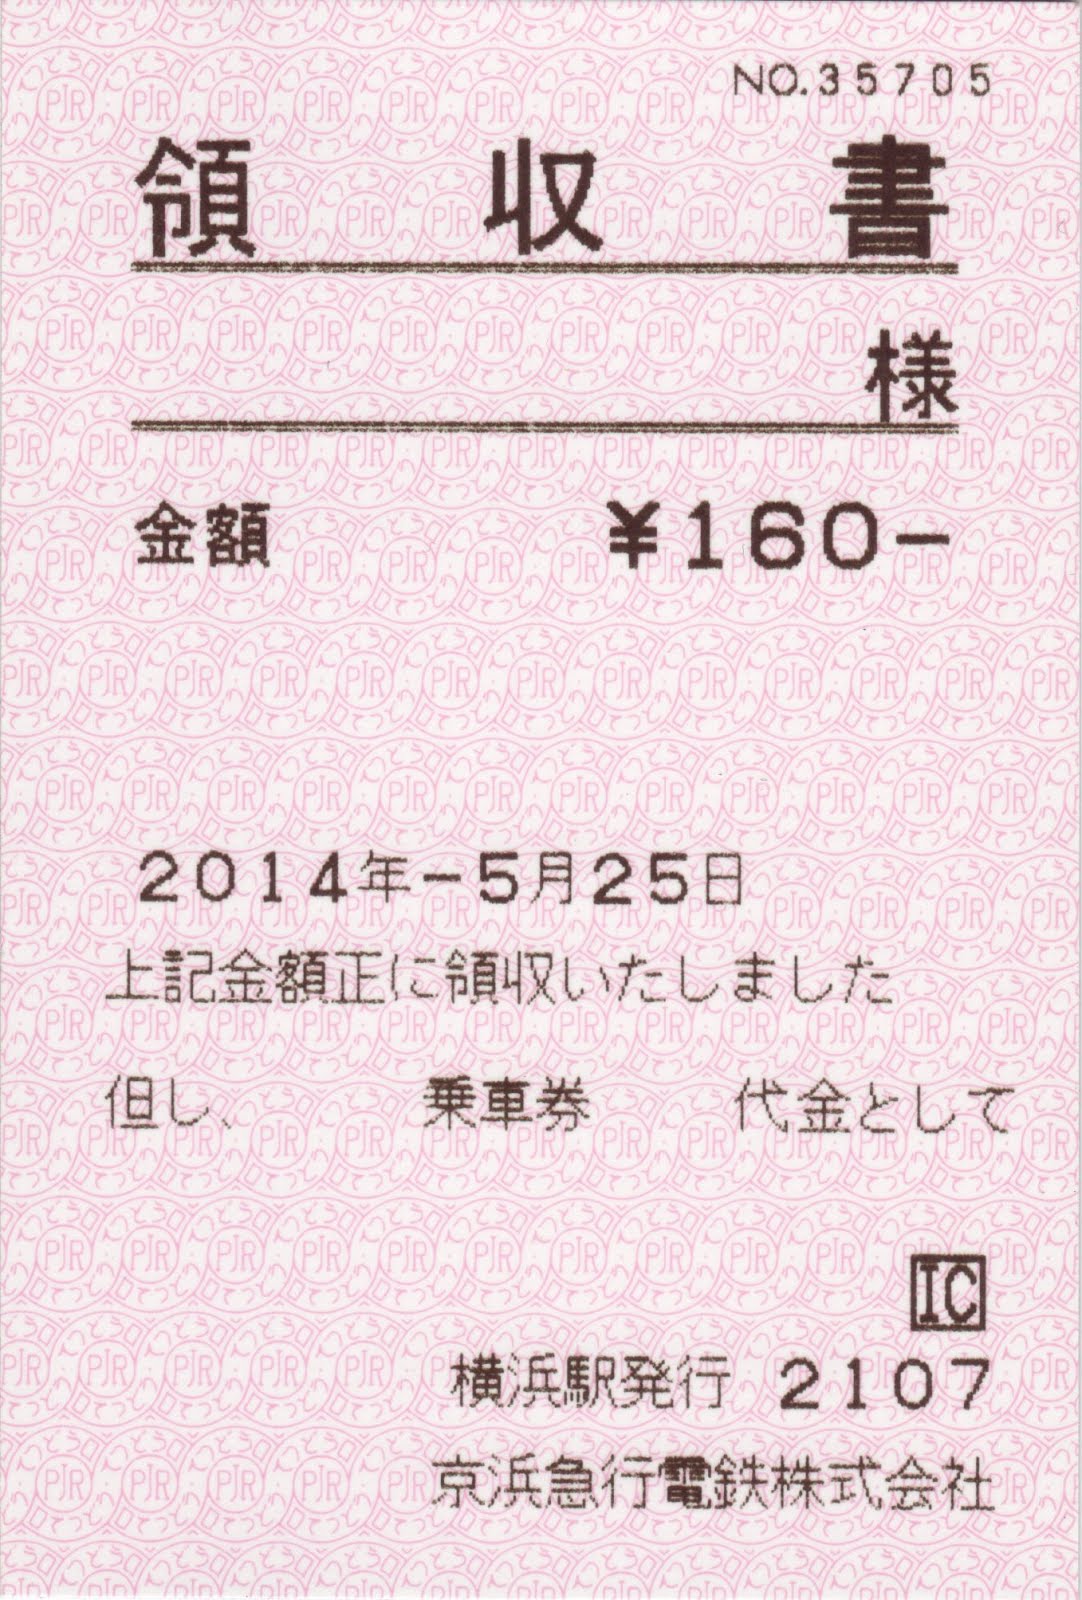 yoshi223のブログ: 券売機・改札機・きっぷまとめ 関東その4